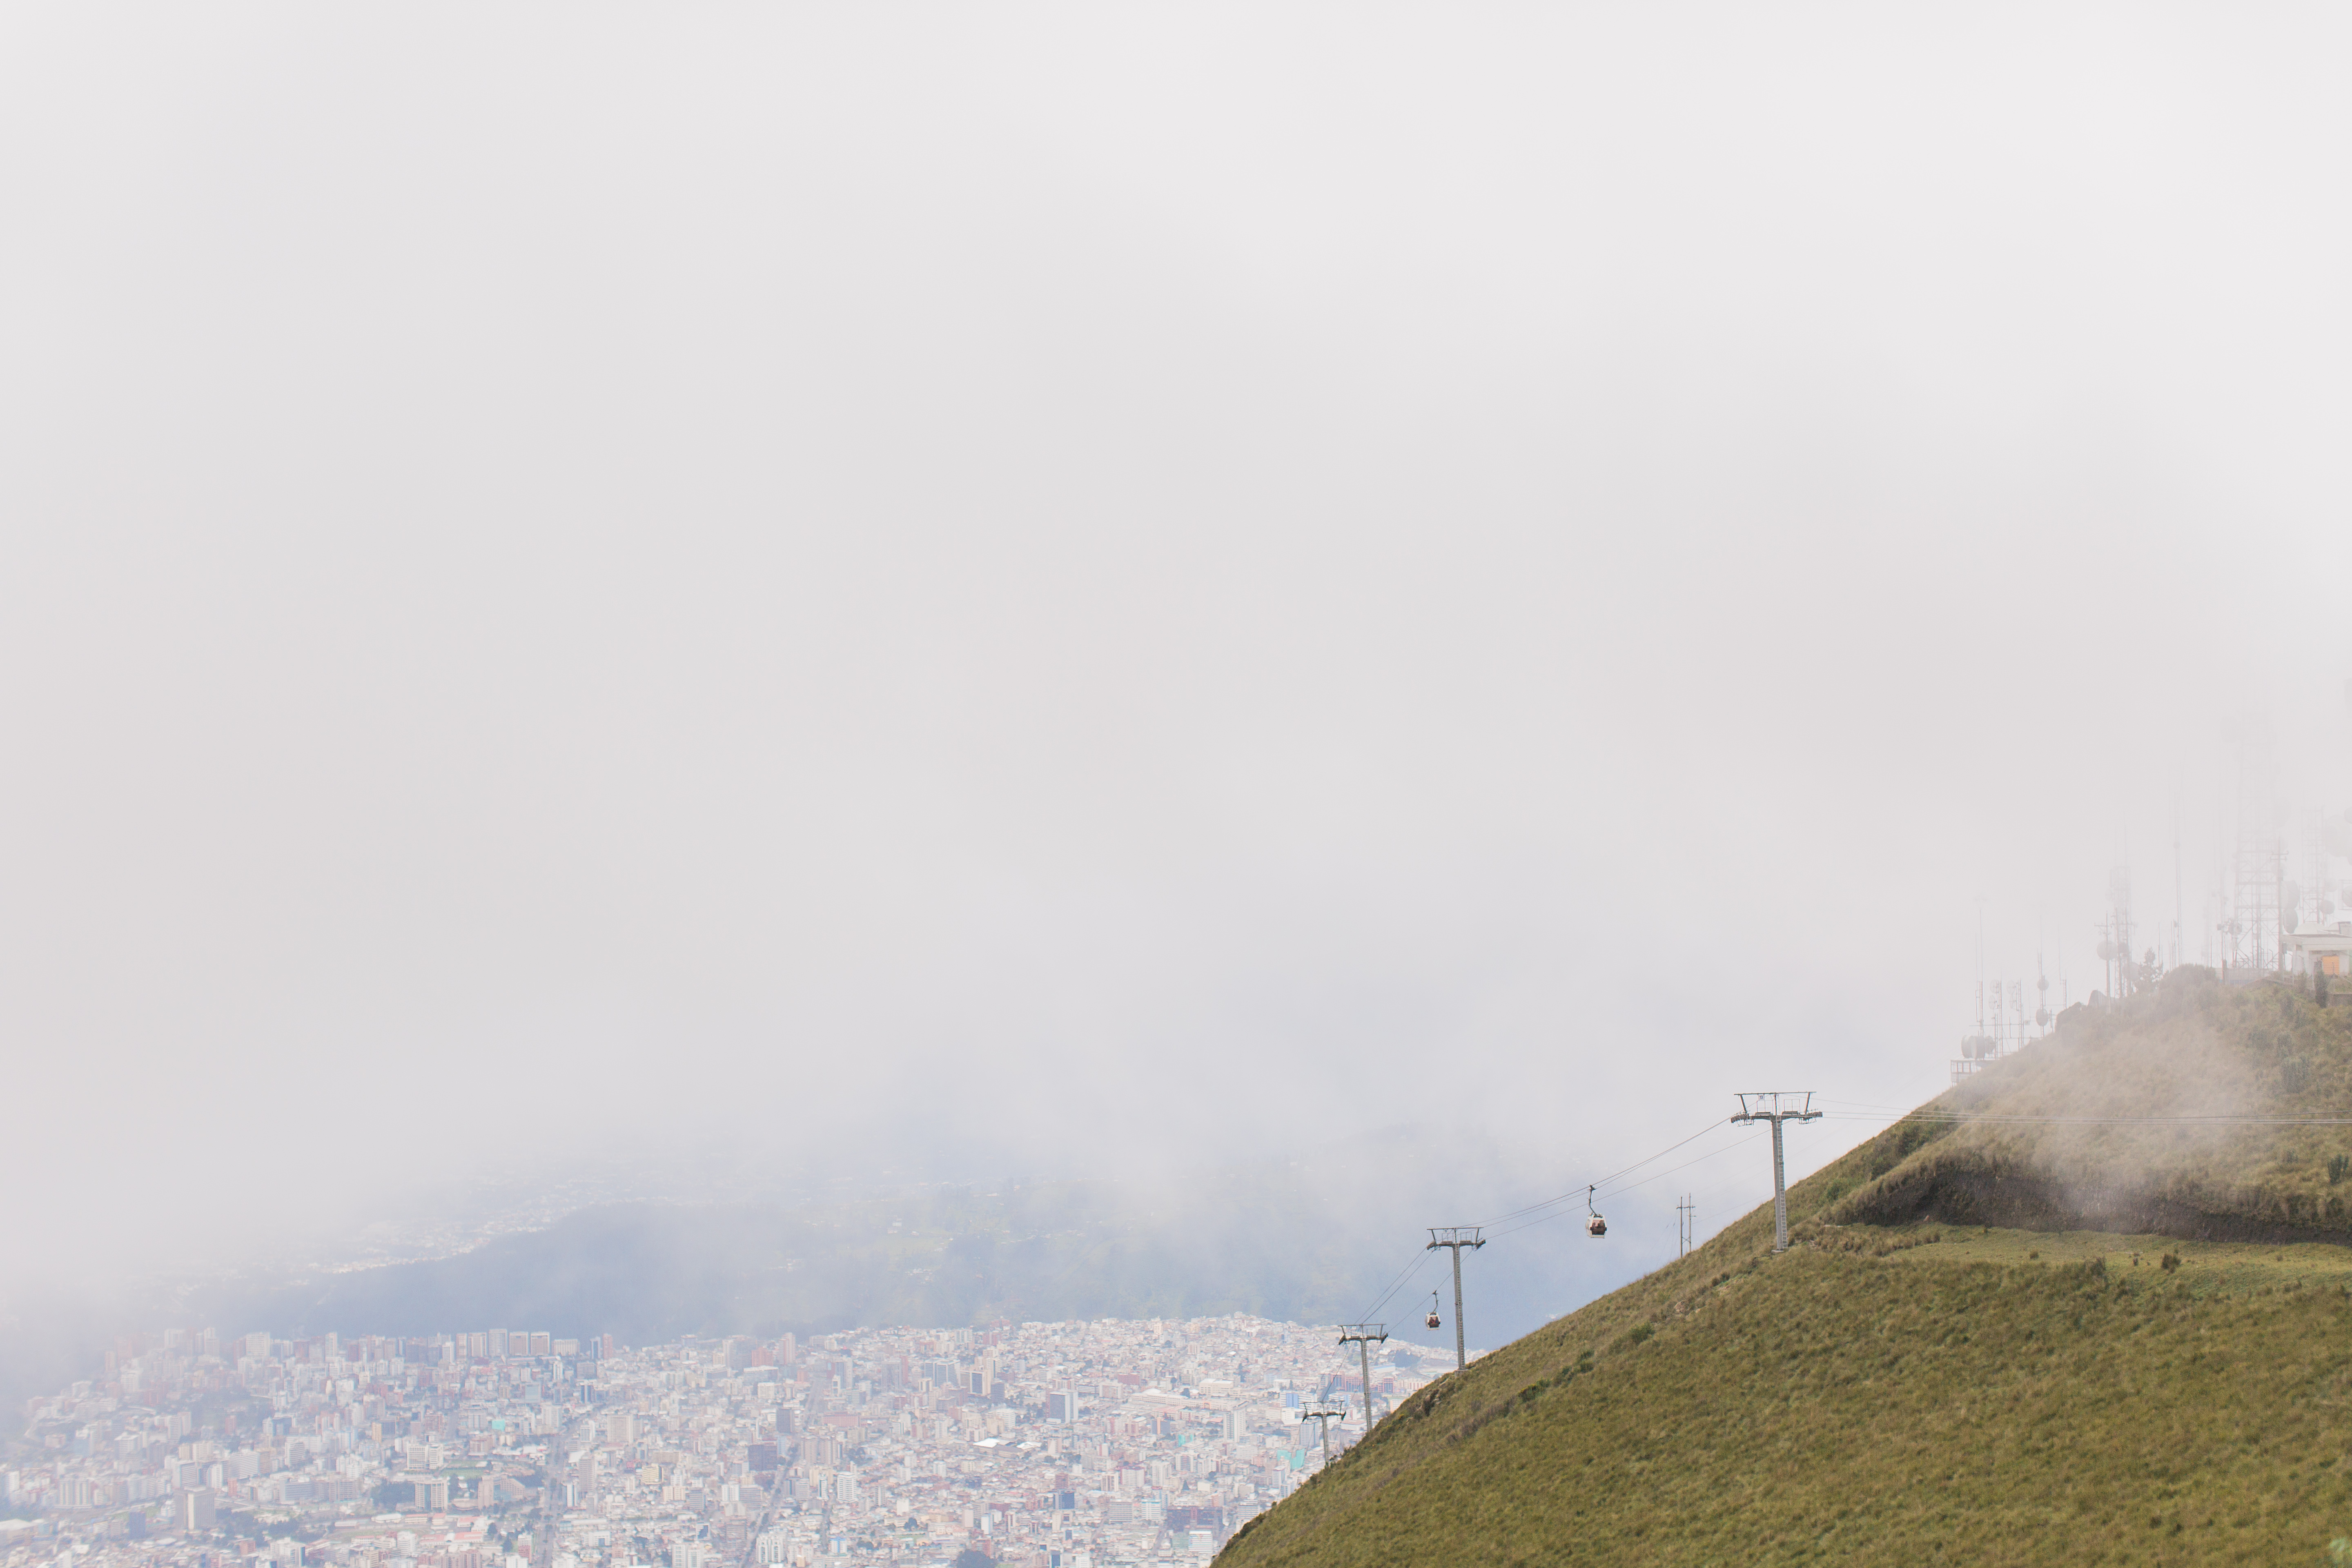 Quito, Ecuador | ©Fleckography 2015 www.fleckography.com, www.m